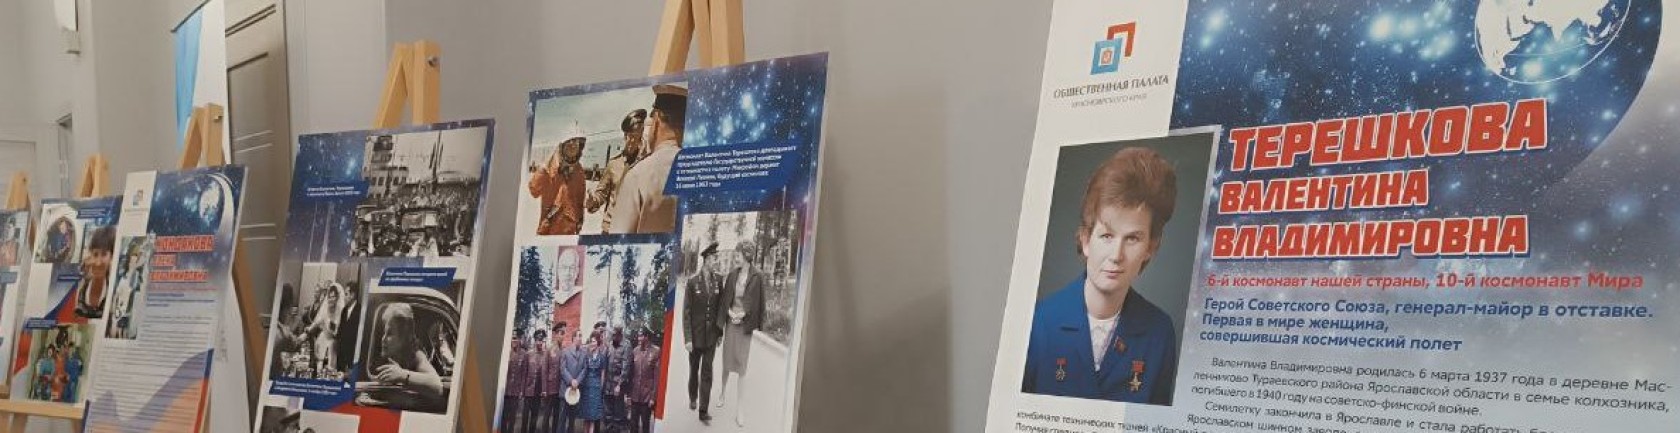 В Общественной палате Красноярского края открылась выставка, посвященная Дню космонавтики